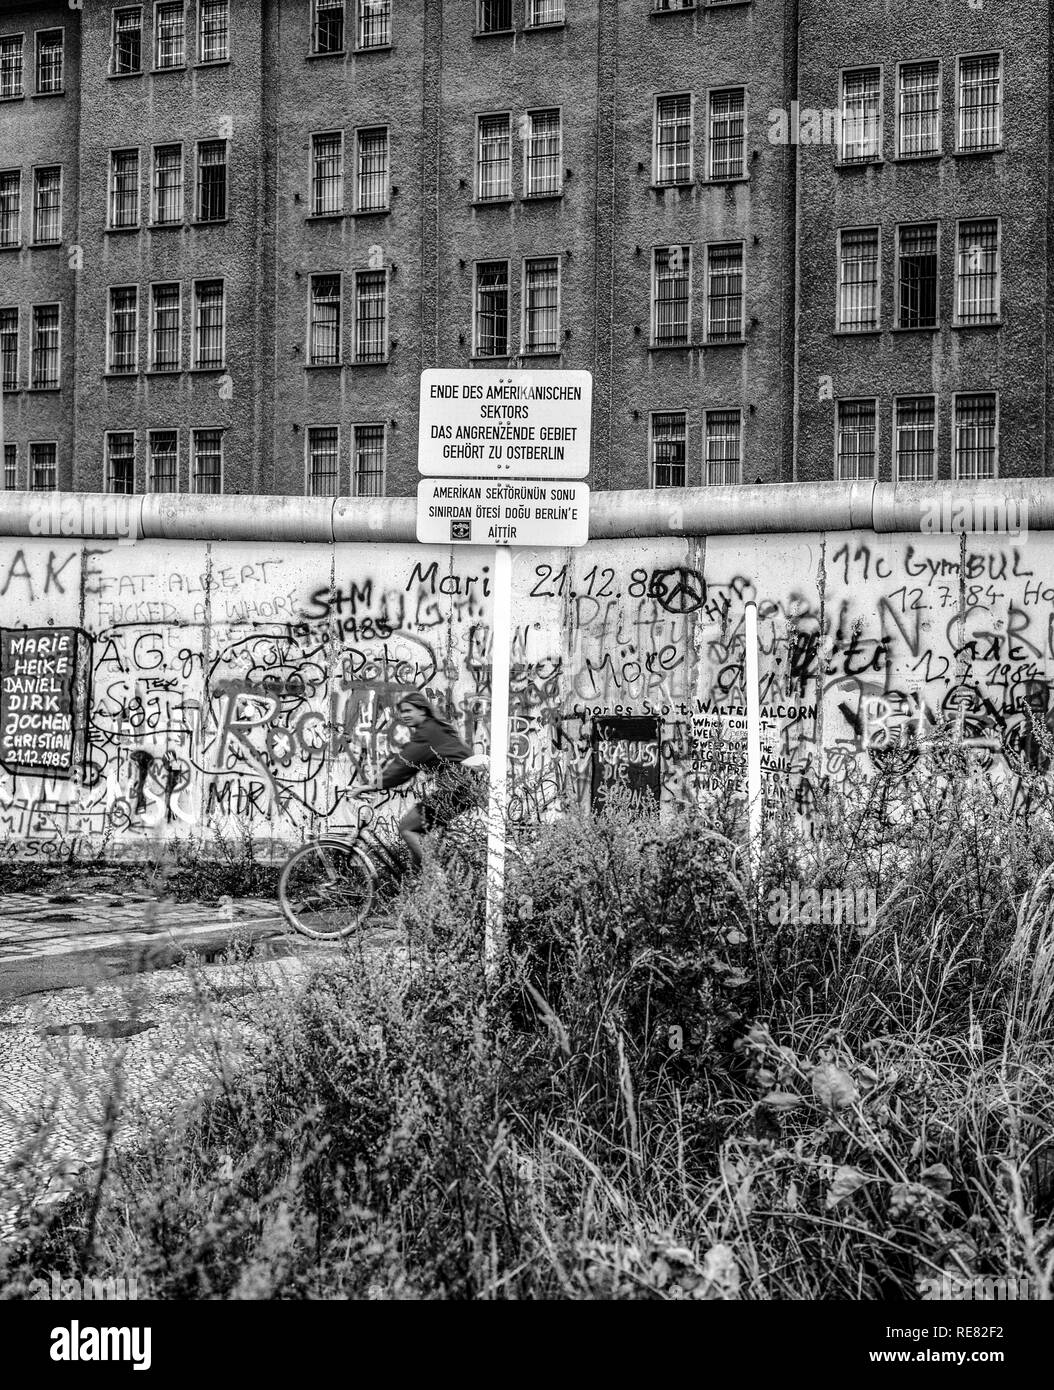 Agosto 1986, muro di Berlino graffitis, cartello di avviso per la fine del settore americano, ciclista, Berlino Est edificio, Berlino Ovest lato, Germania, Europa Foto Stock